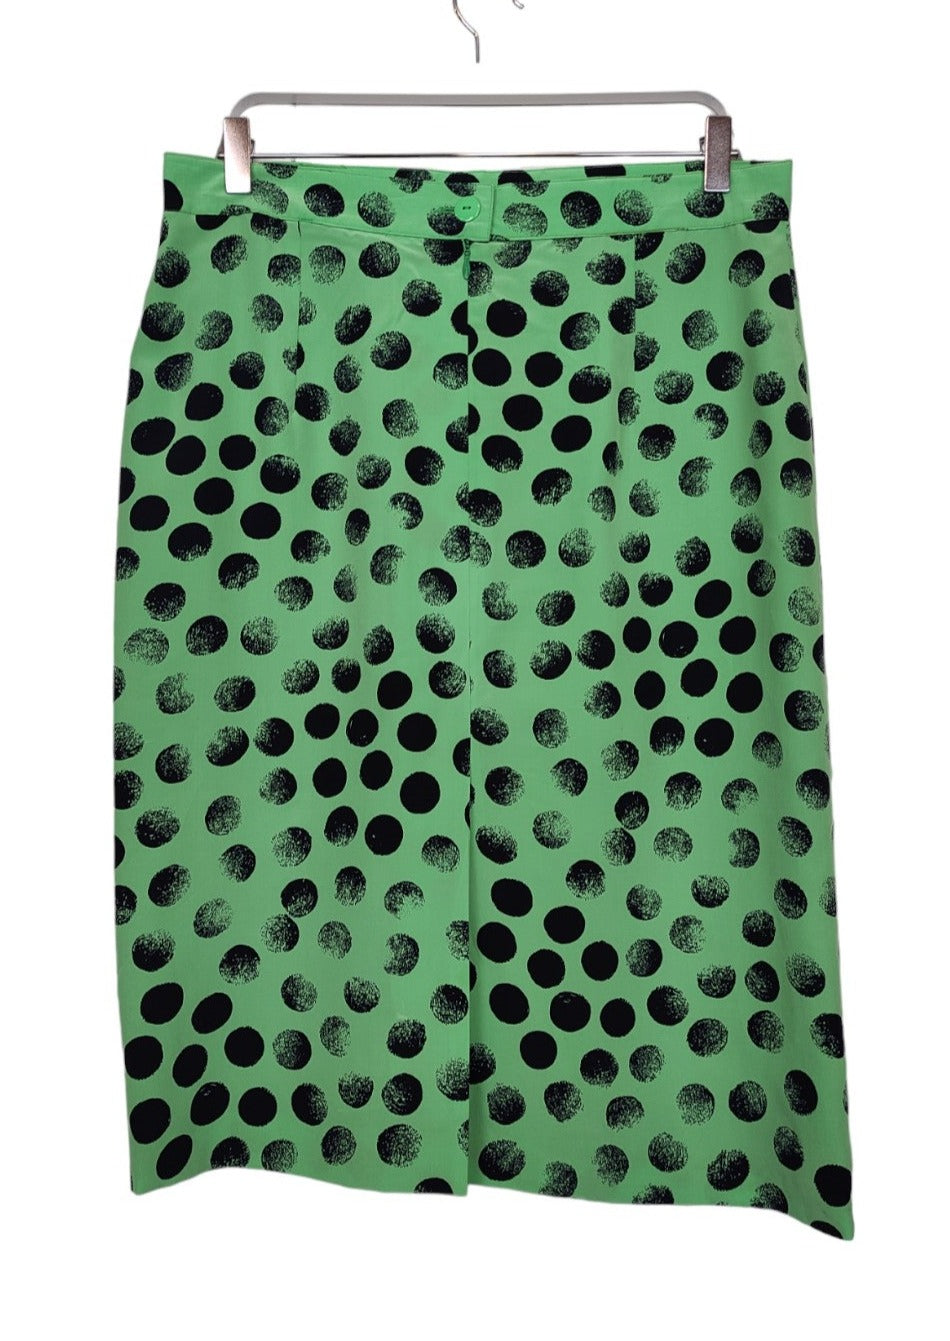 Μεταξωτή, Vintage, Under the Knee Φούστα FINK σε Πράσινο χρώμα (Medium)